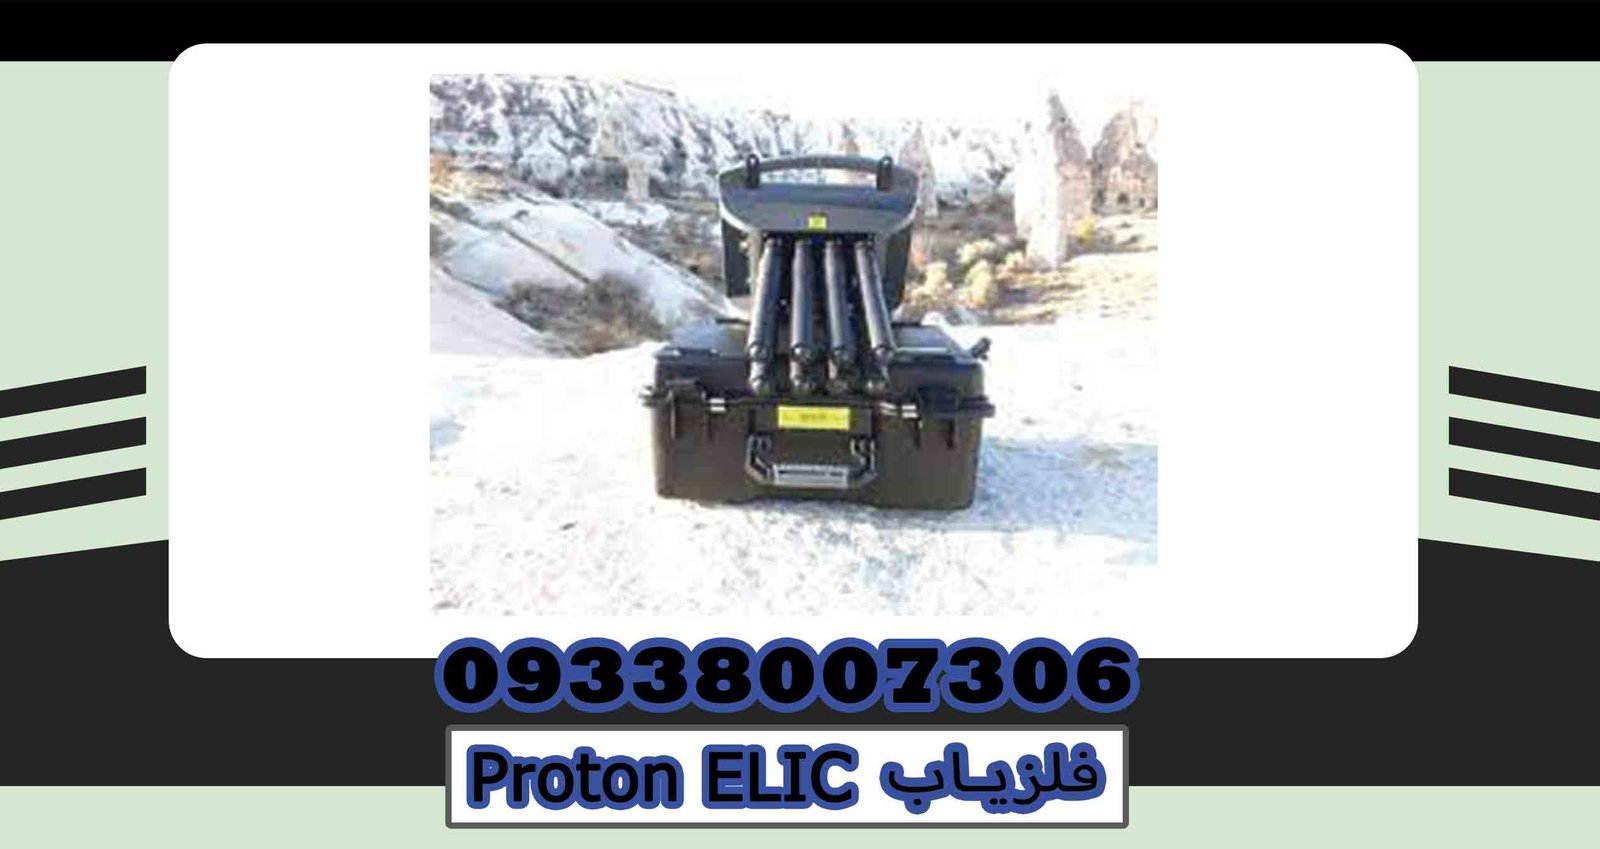 Proton ELIC